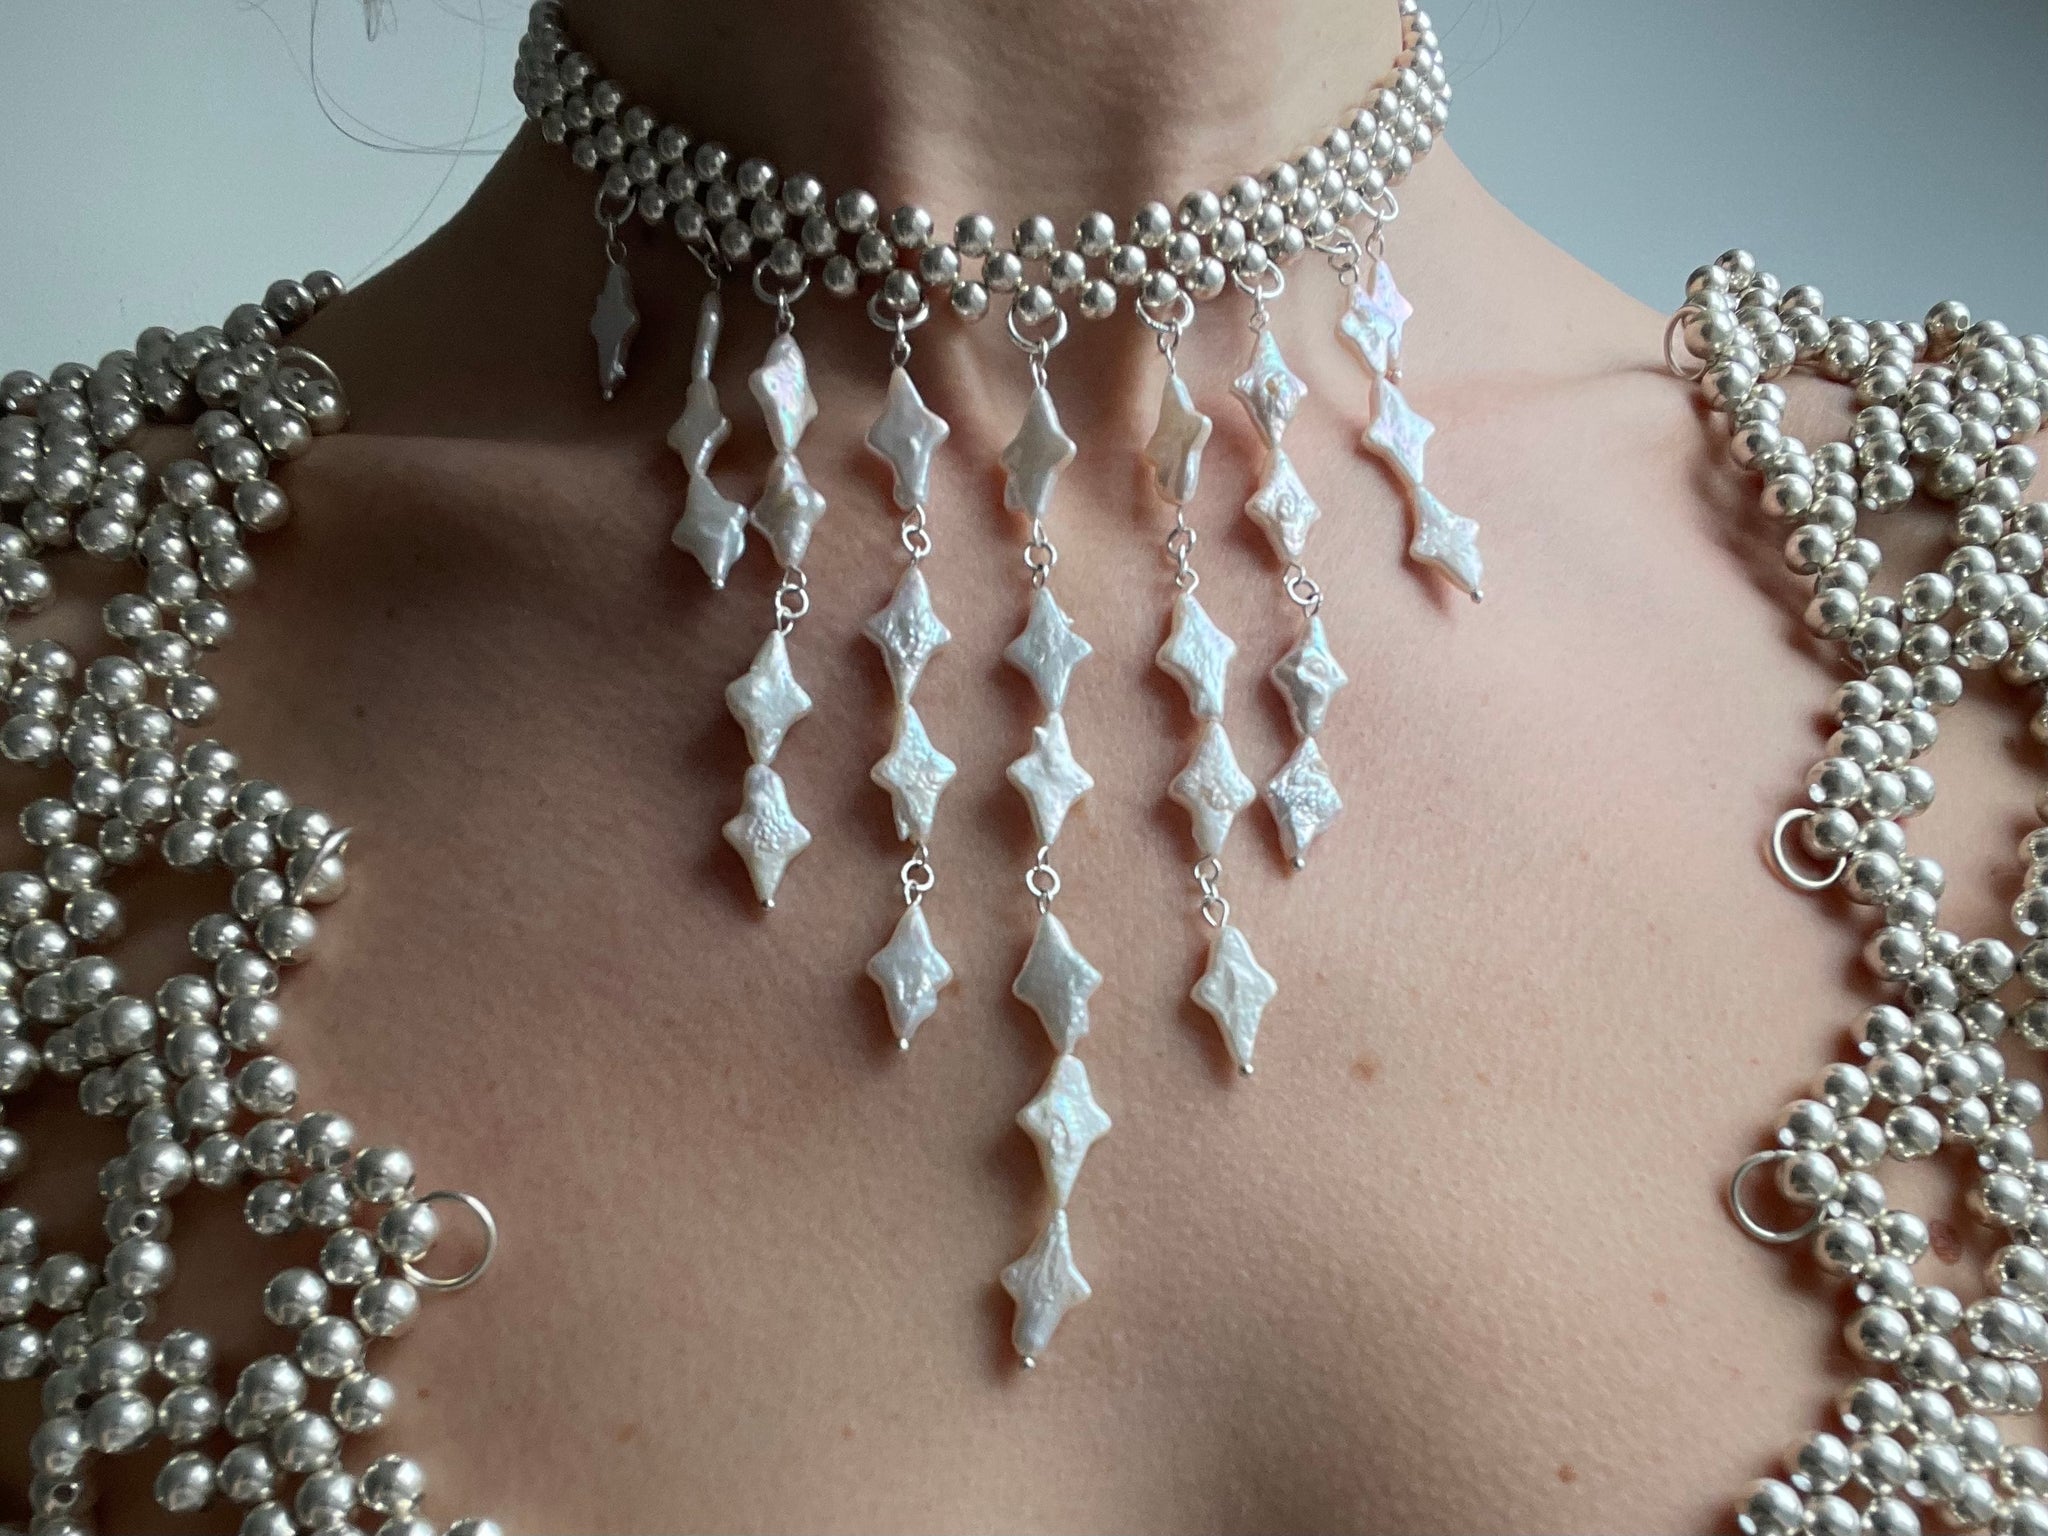 'Duchess' necklace